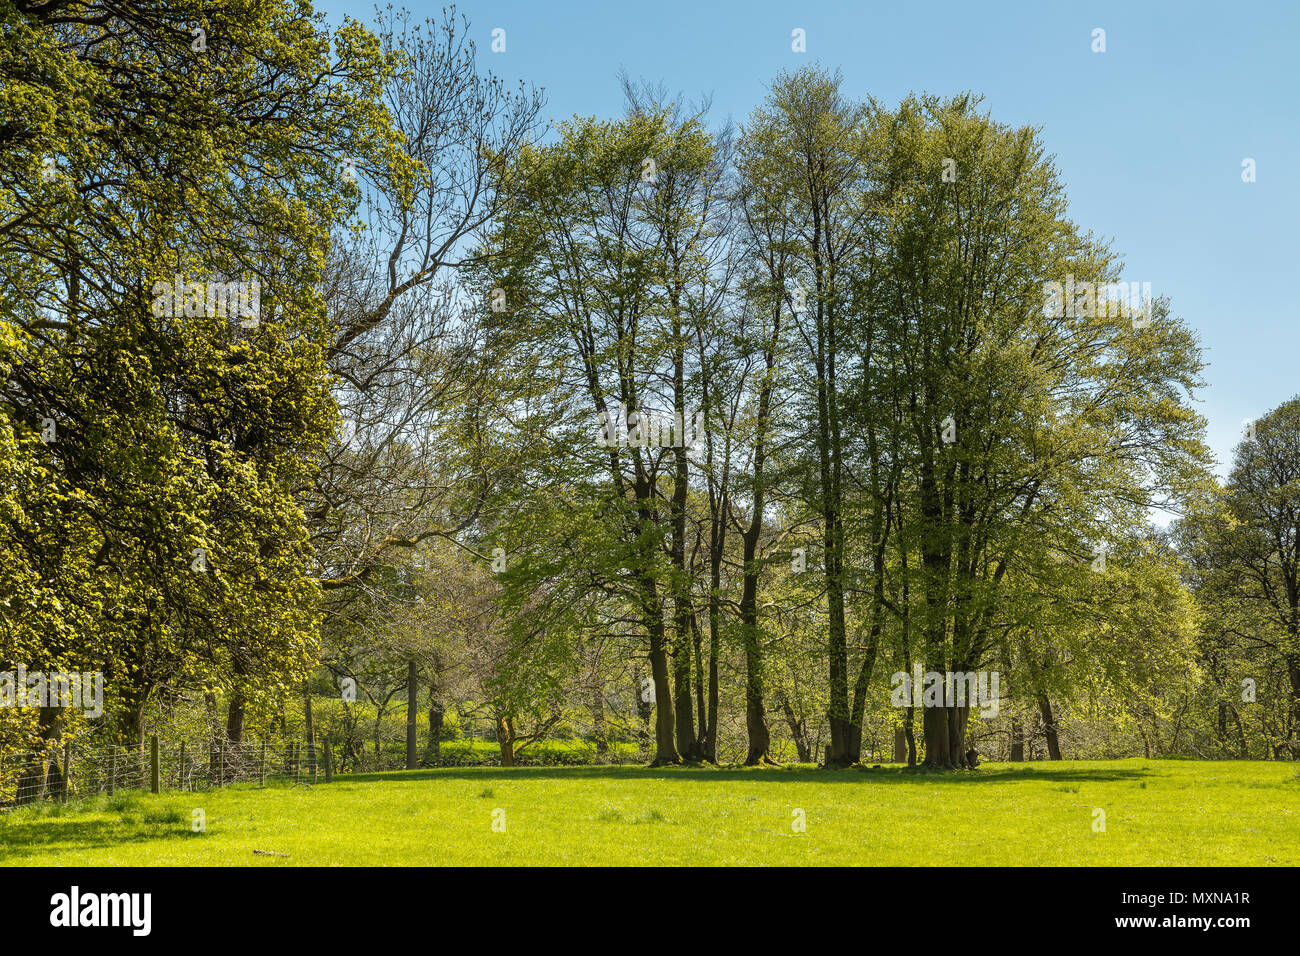 Una imagen de un bosquecillo de árboles erguido orgulloso en la campiña inglesa. Foto de stock